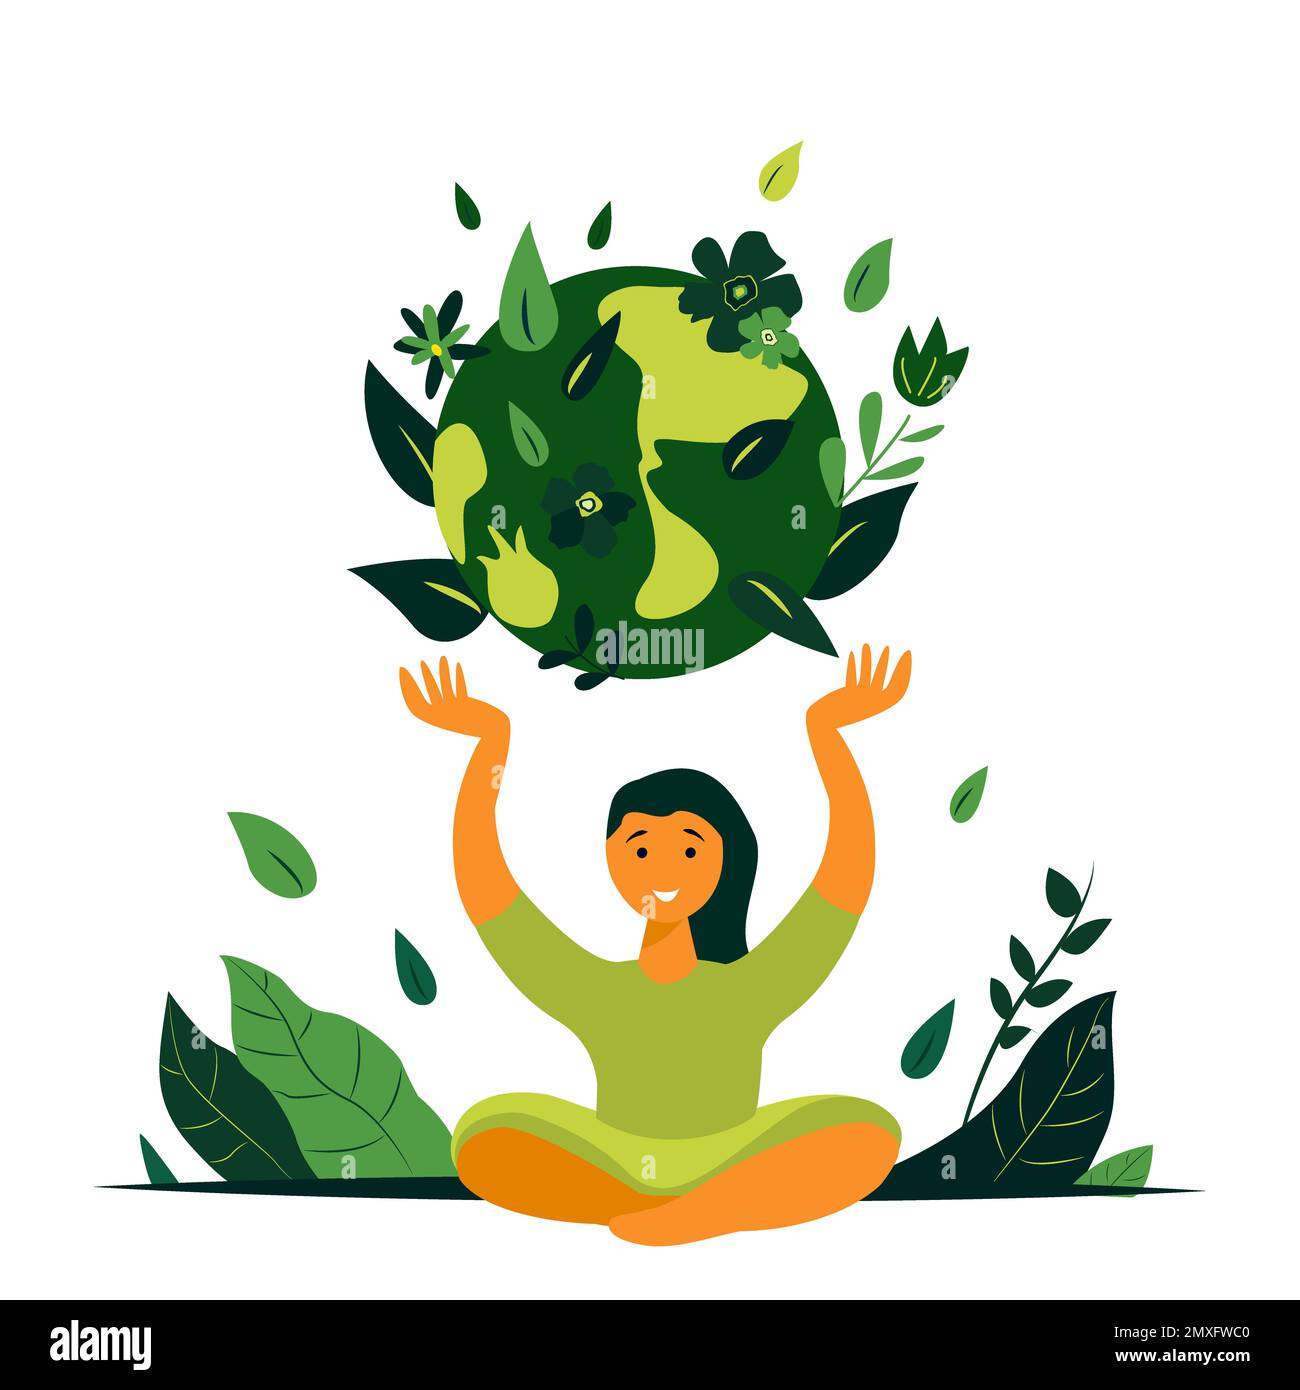 Earth Day Internationaler Feiertag.Junges lächelndes Mädchen legt Hände hoch zum Planet Globe.fürsorgliche, liebevolle Frau.Save Healthy Green Nature,Energy, Ecology Support. Stockfoto